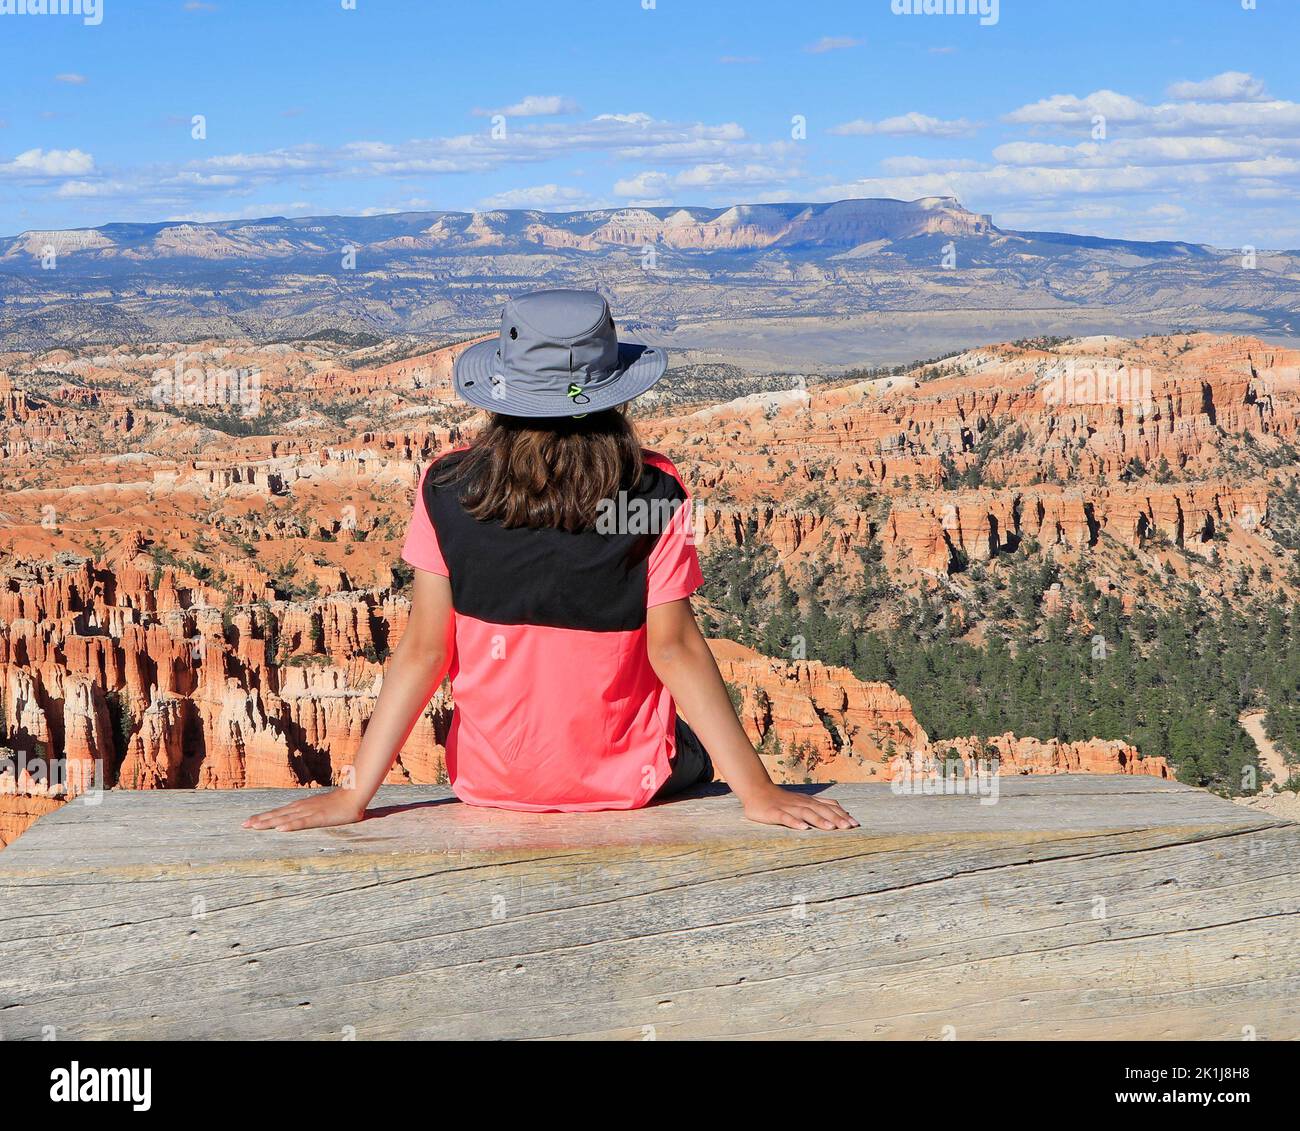 Jeune fille touristique debout sur le banc de bois et admirant le paysage de Bryce Canyon dans l'Utah, États-Unis Banque D'Images